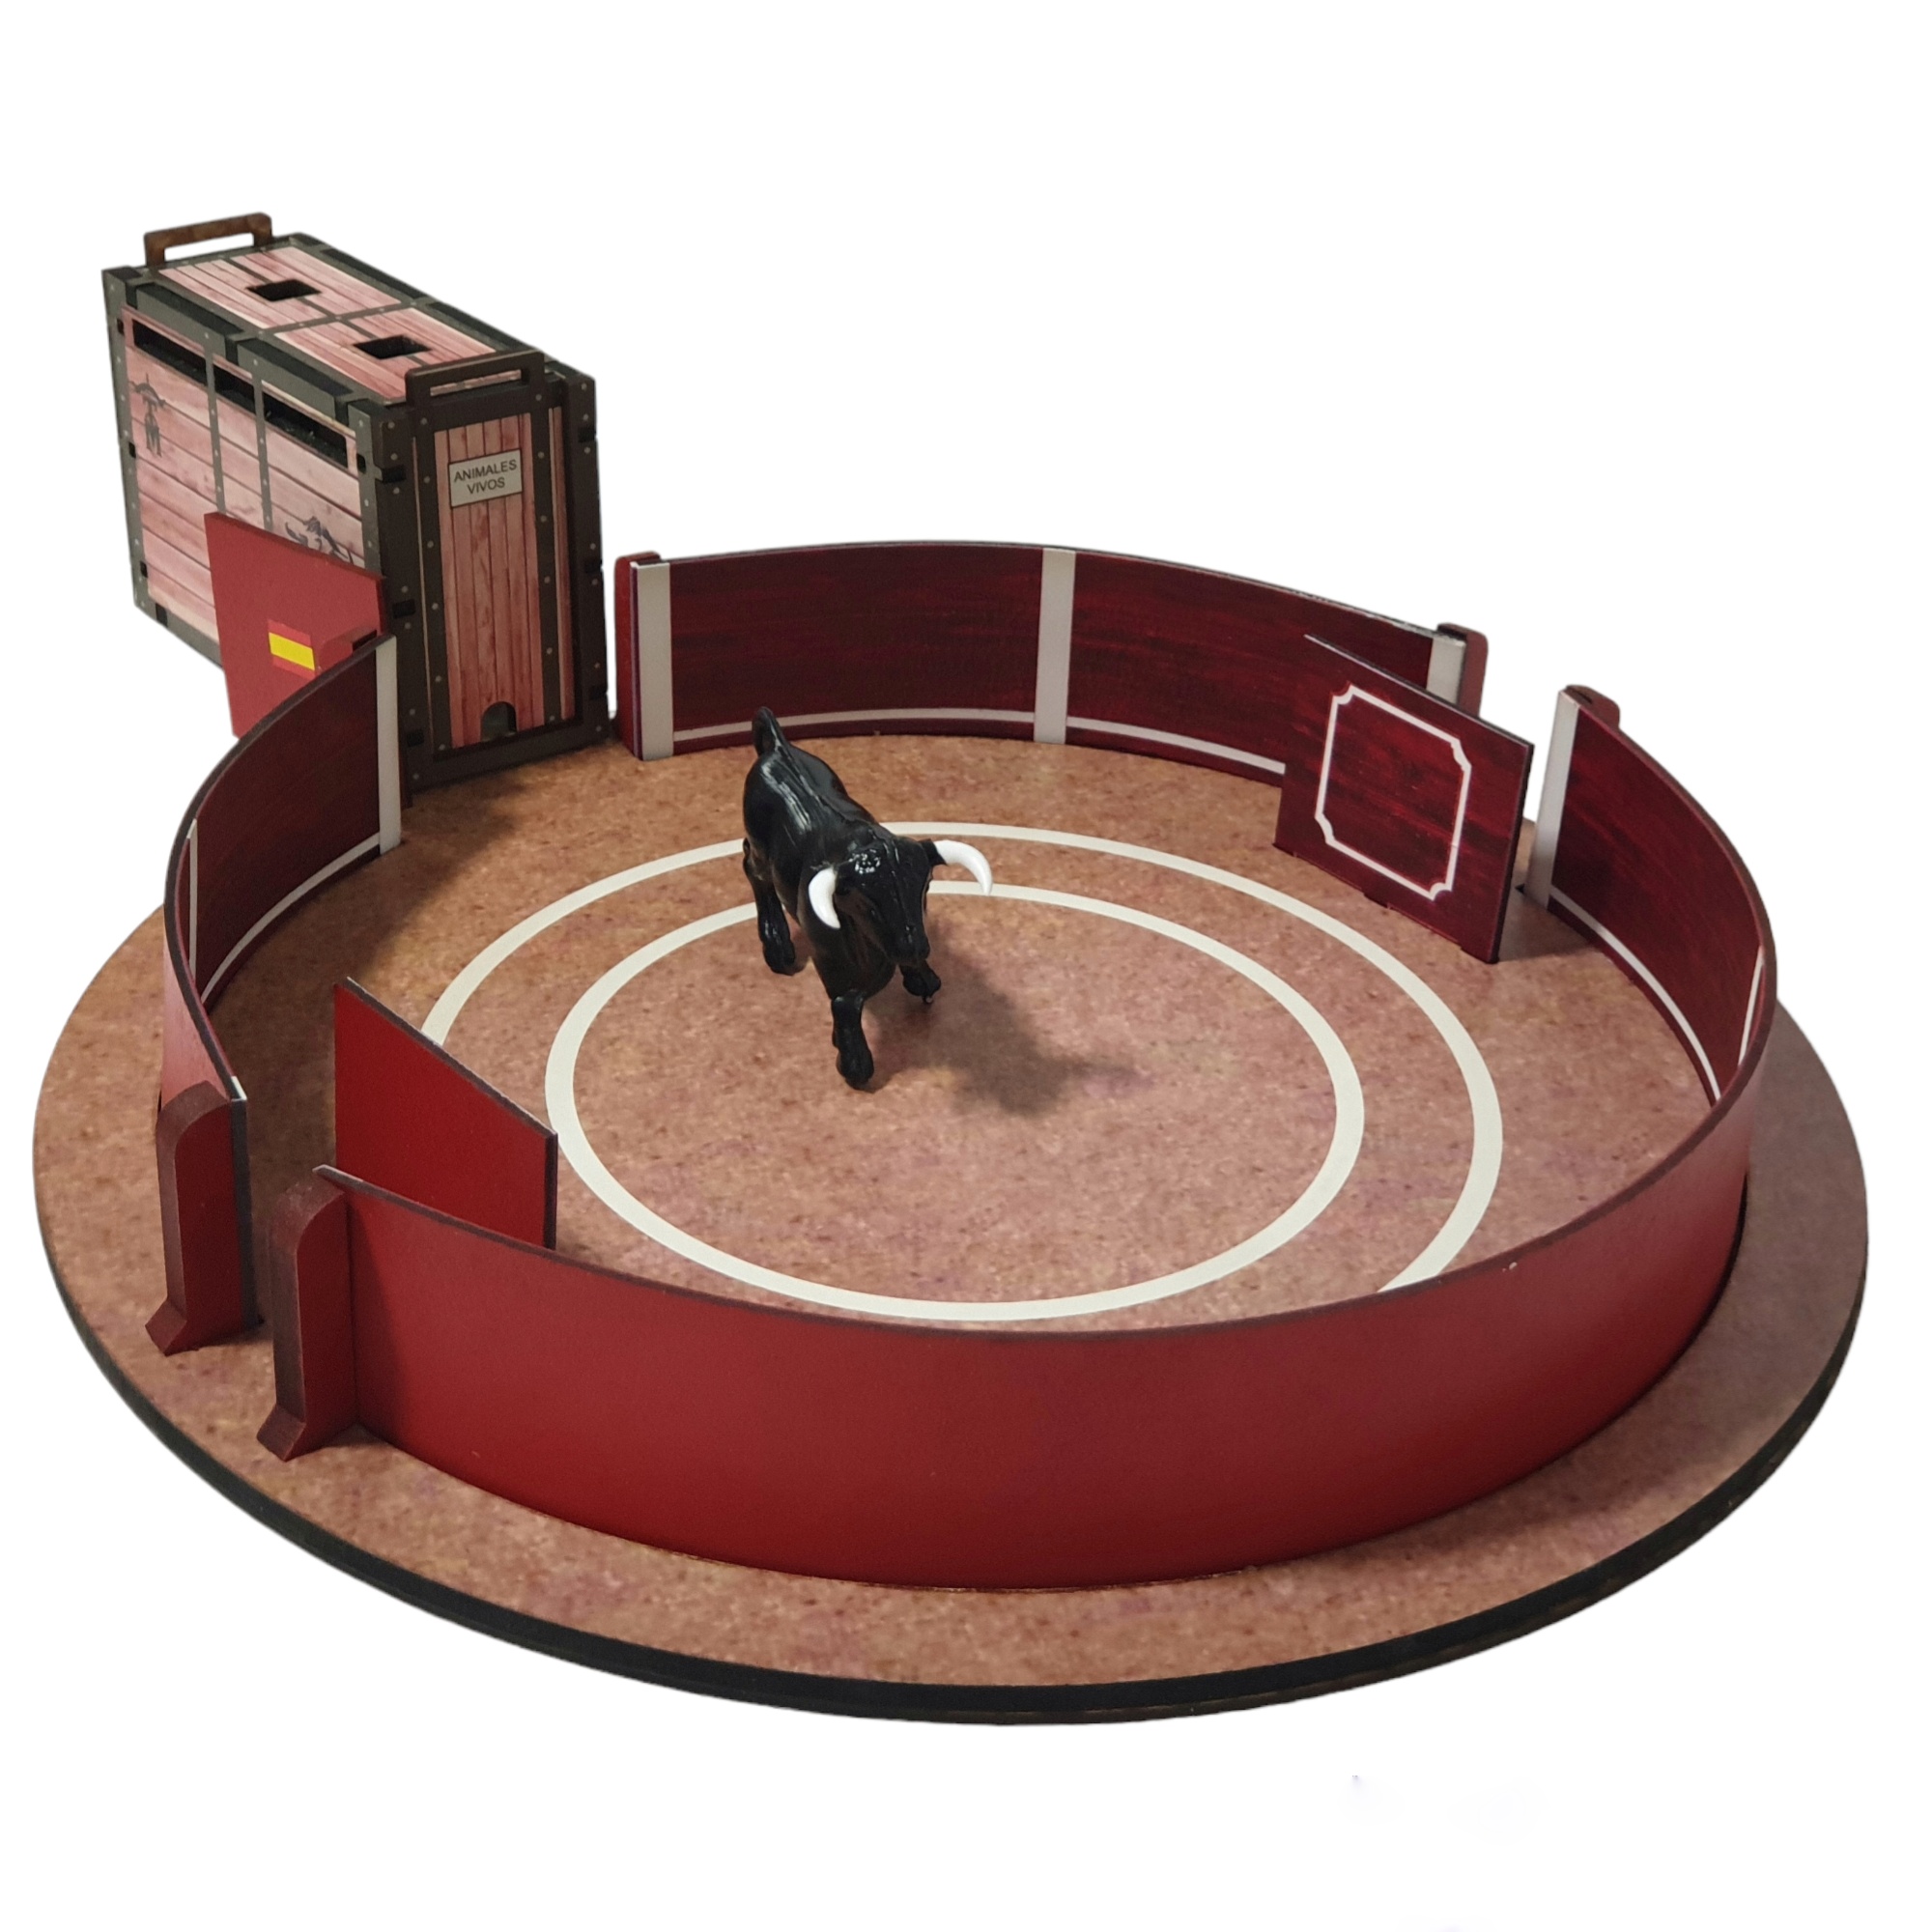 Pack plaza de toros de juguete con cajon  o toril a escala playmobil